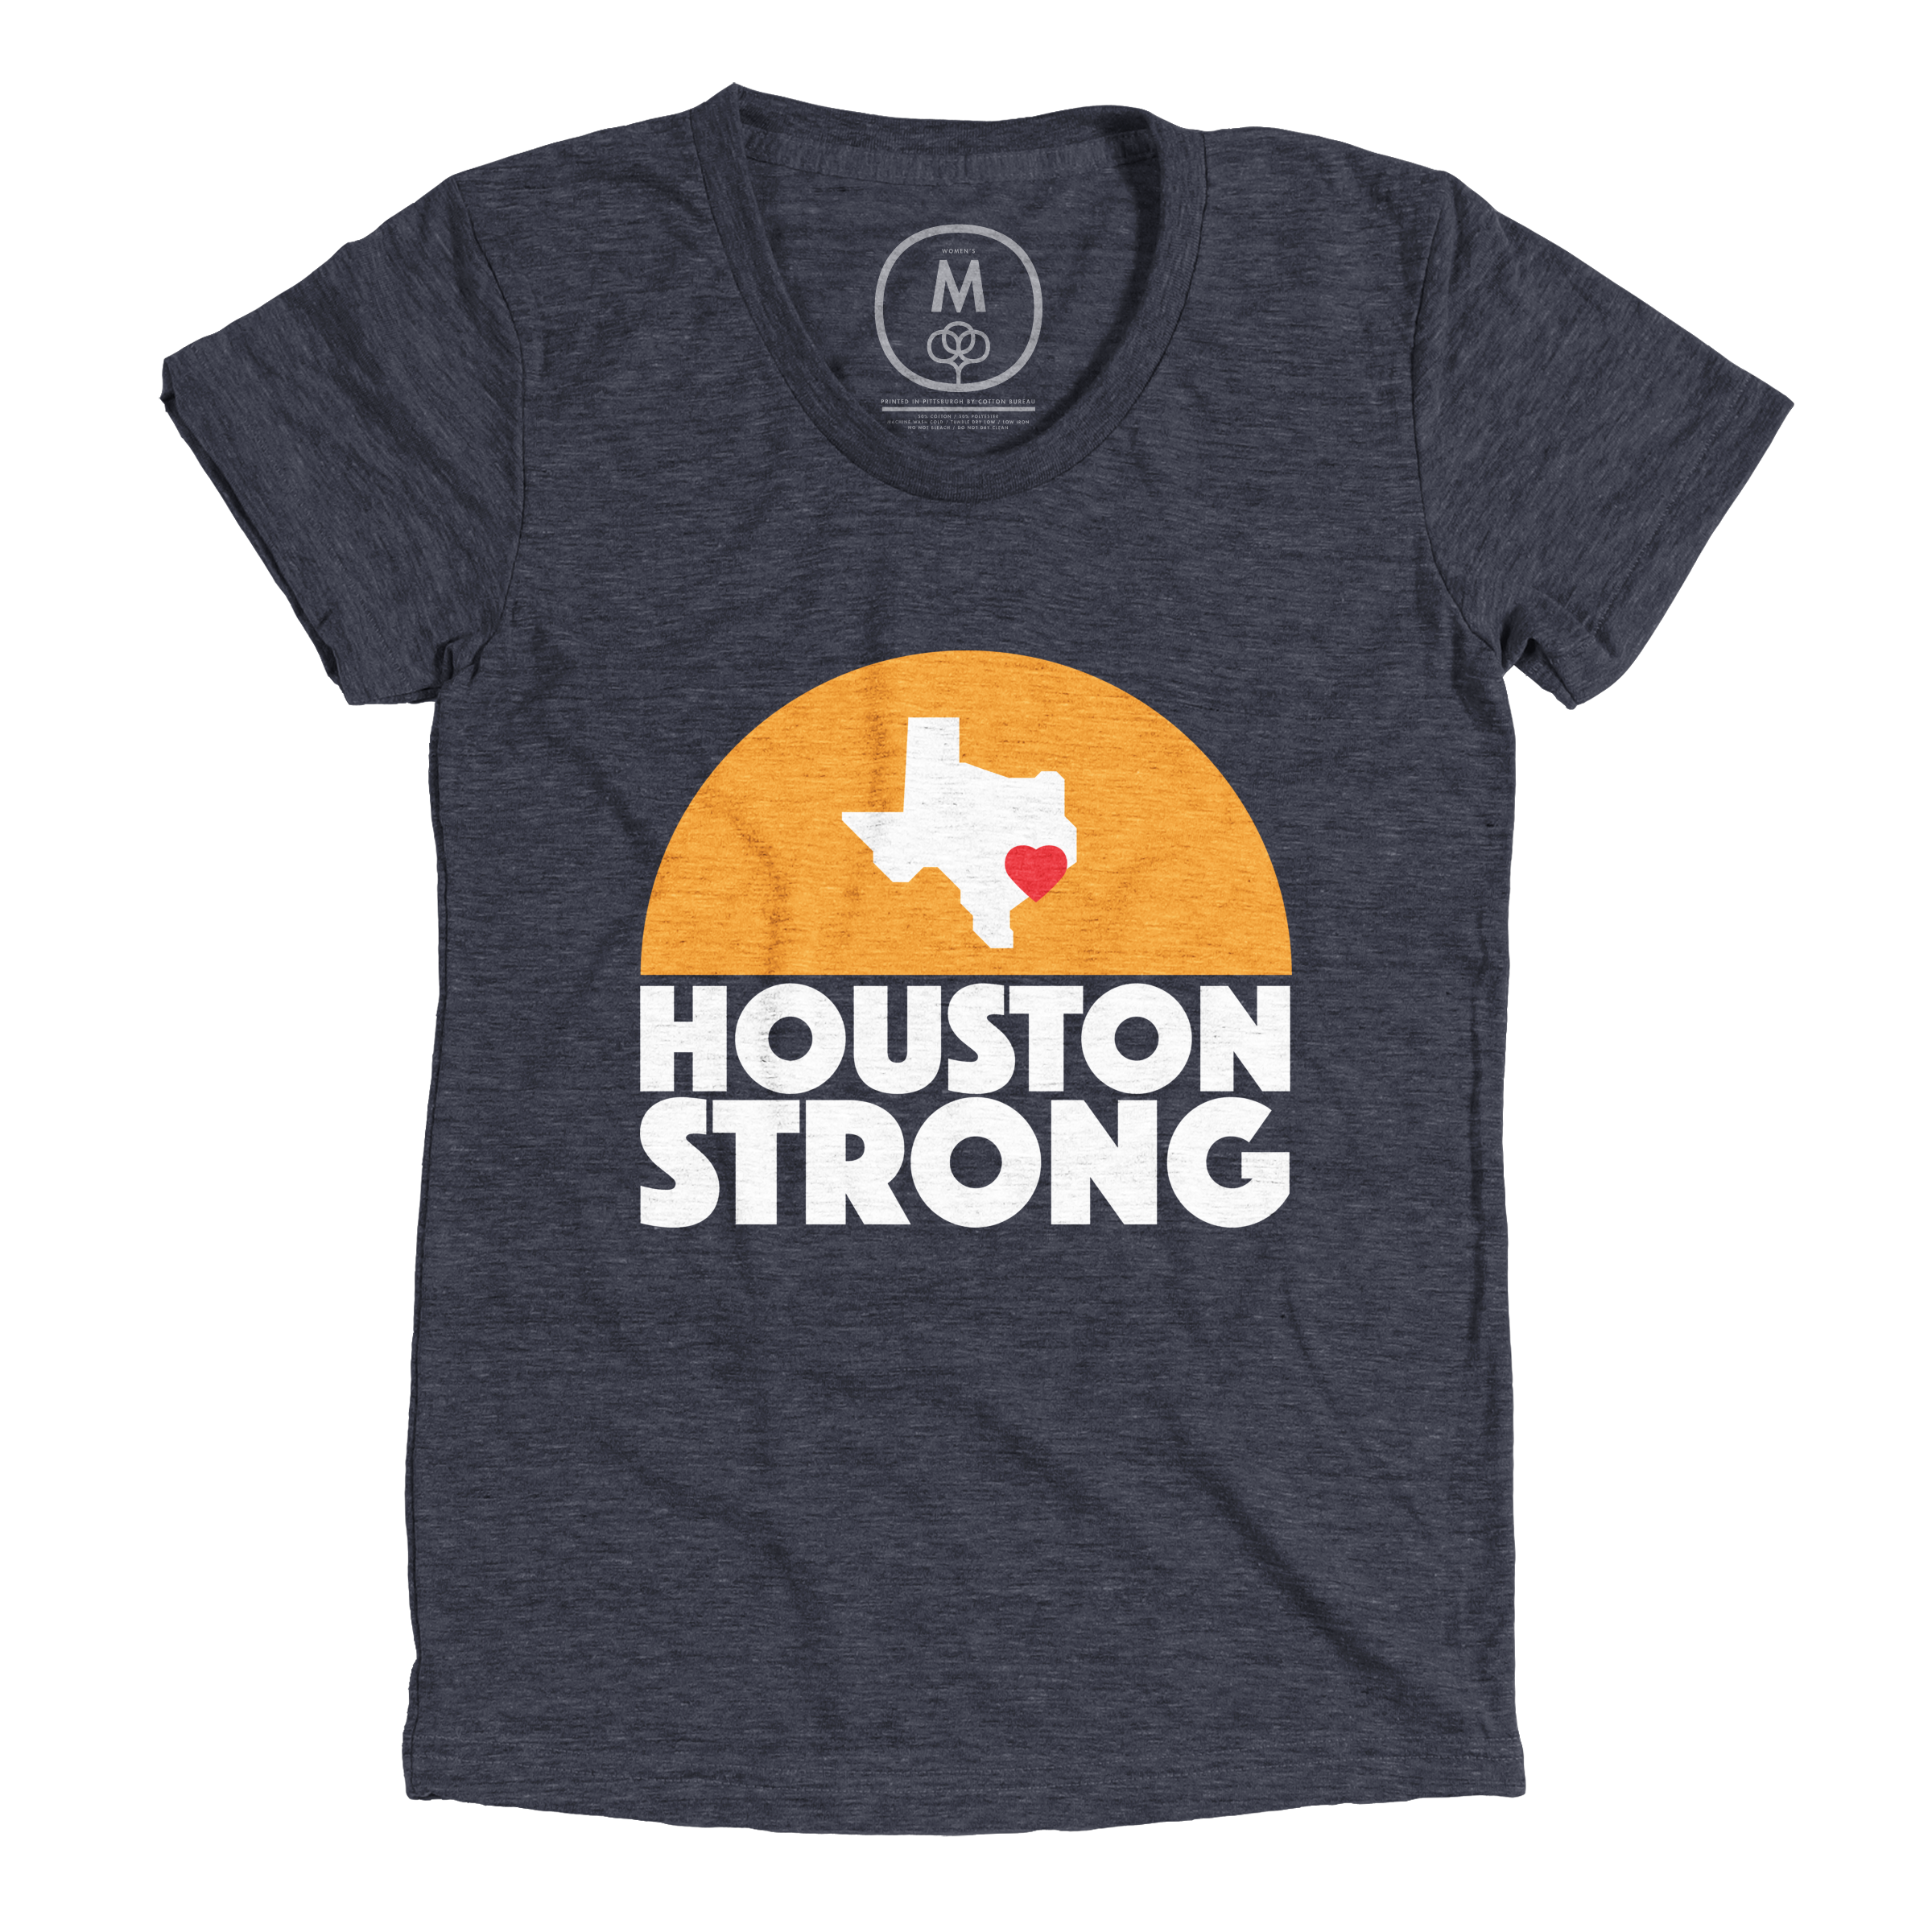 Houston Strong - Women's Tee